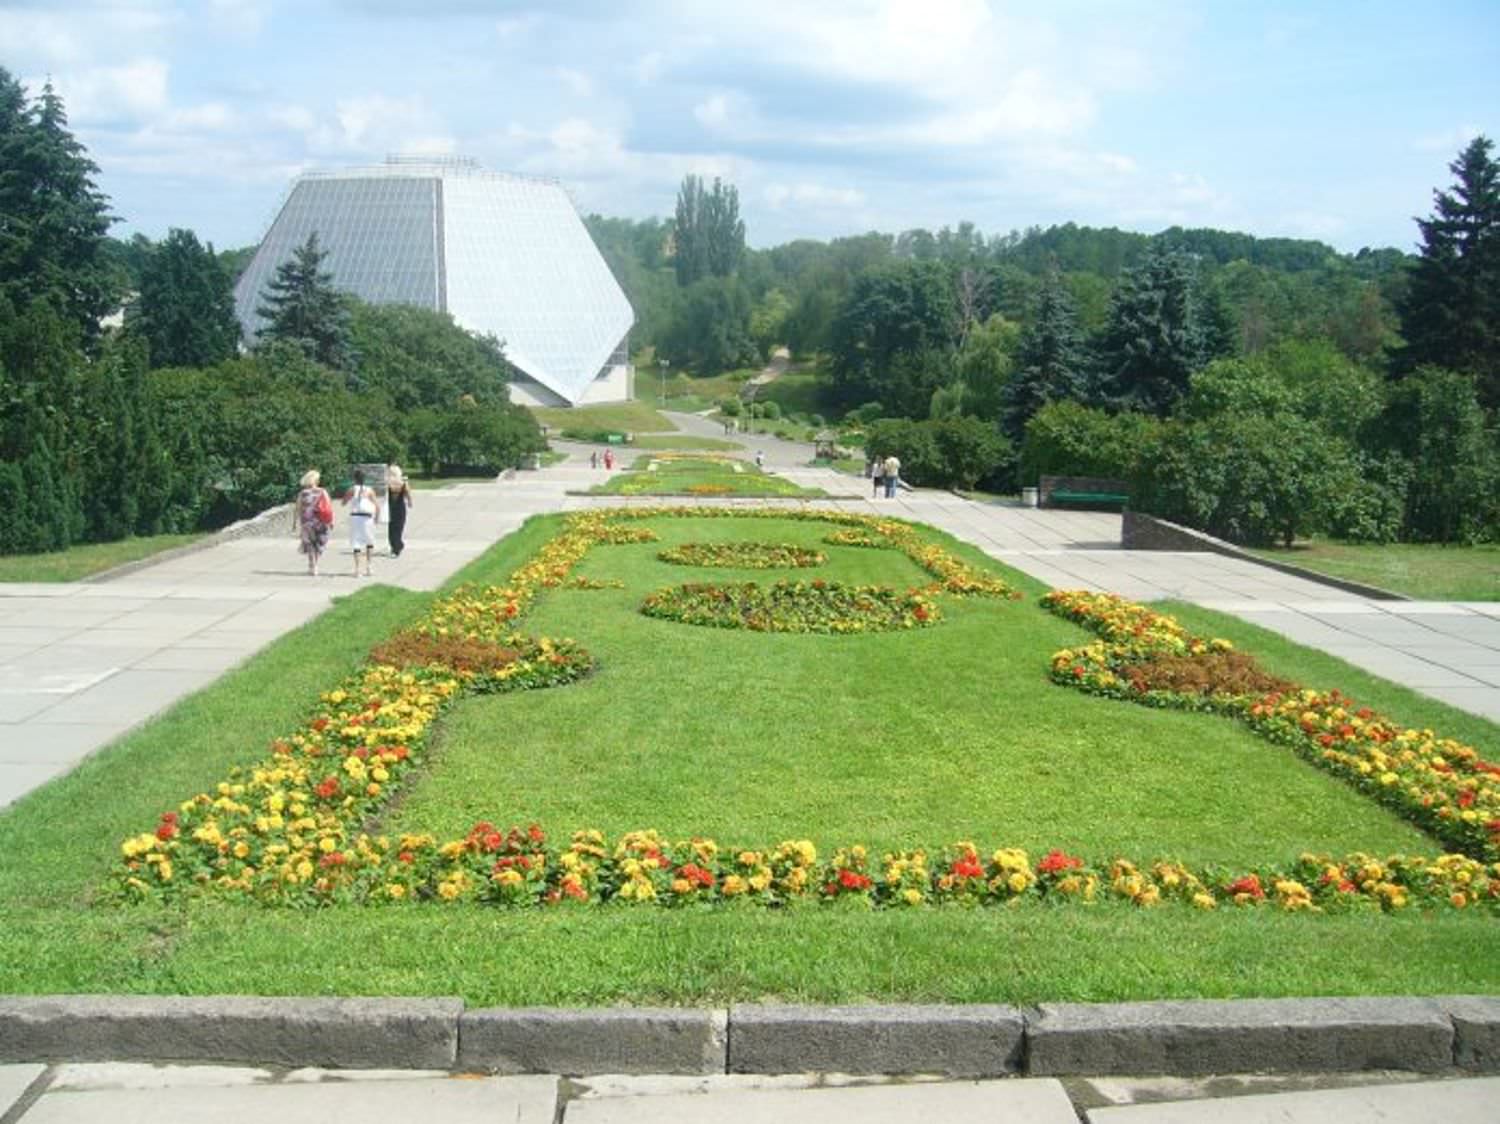 Мирный Киев летом 2010 года. Часть 7. Ландшафты и архитектура Ботанического сада.